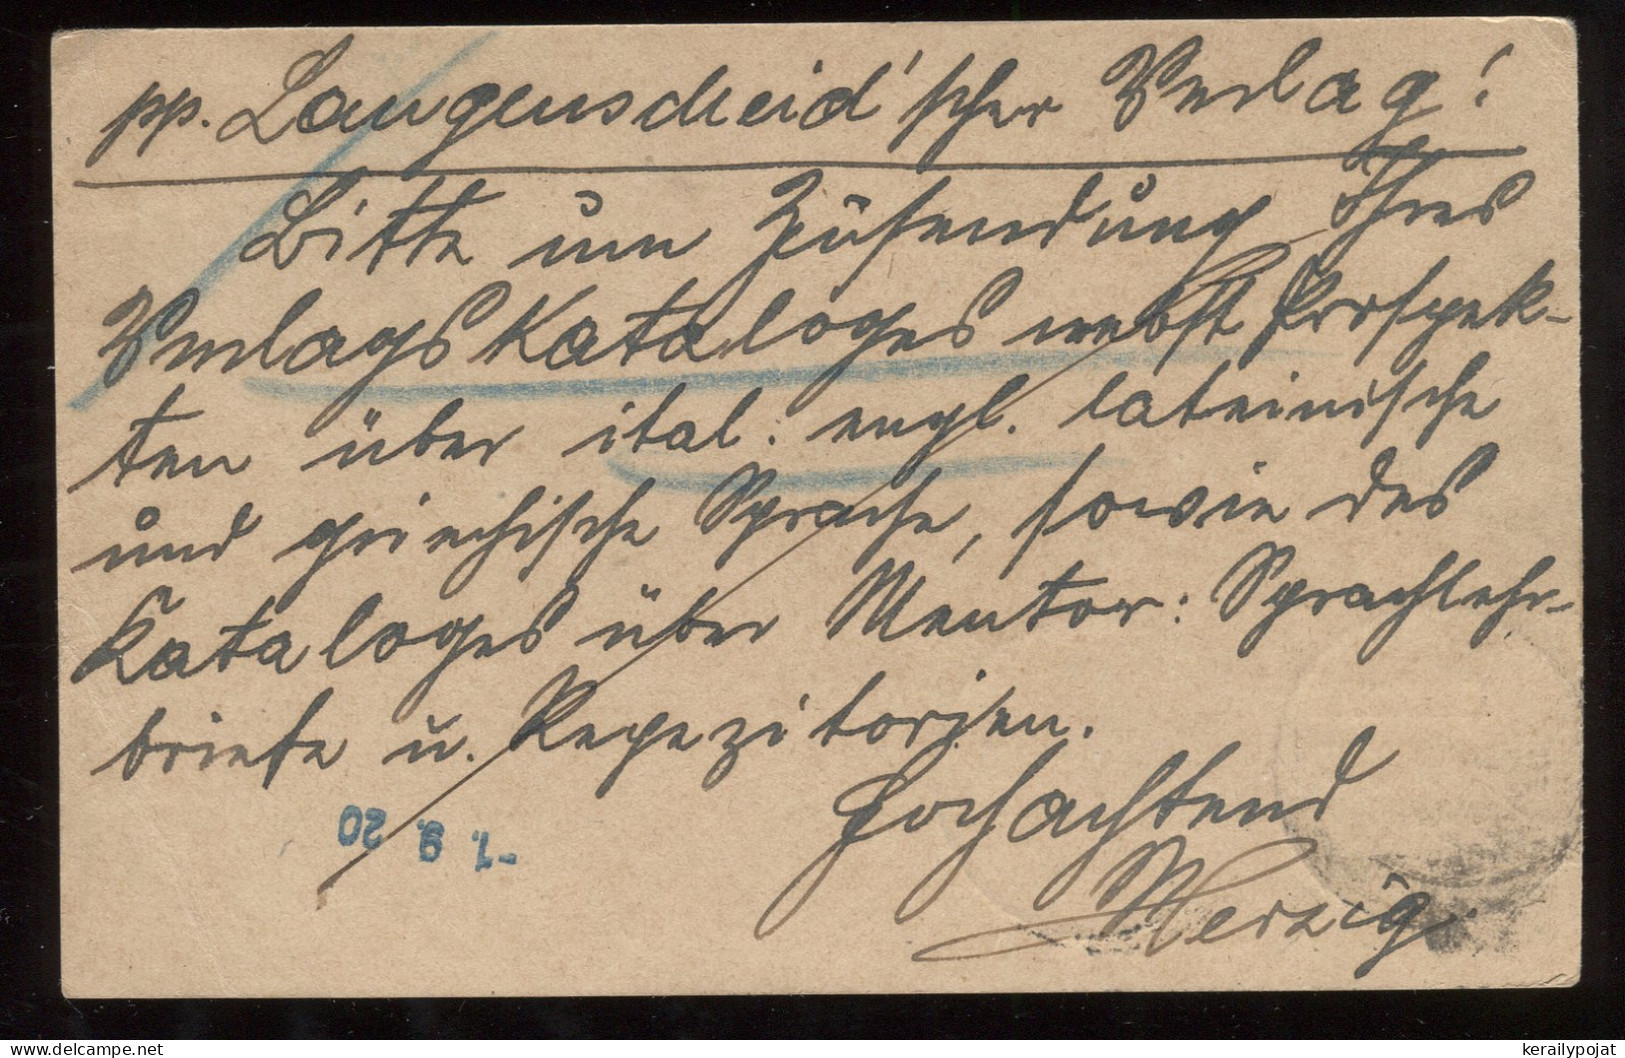 Saargebiet 1920 Saarbrucken Stationery Card To Berlin__(8322) - Postal Stationery